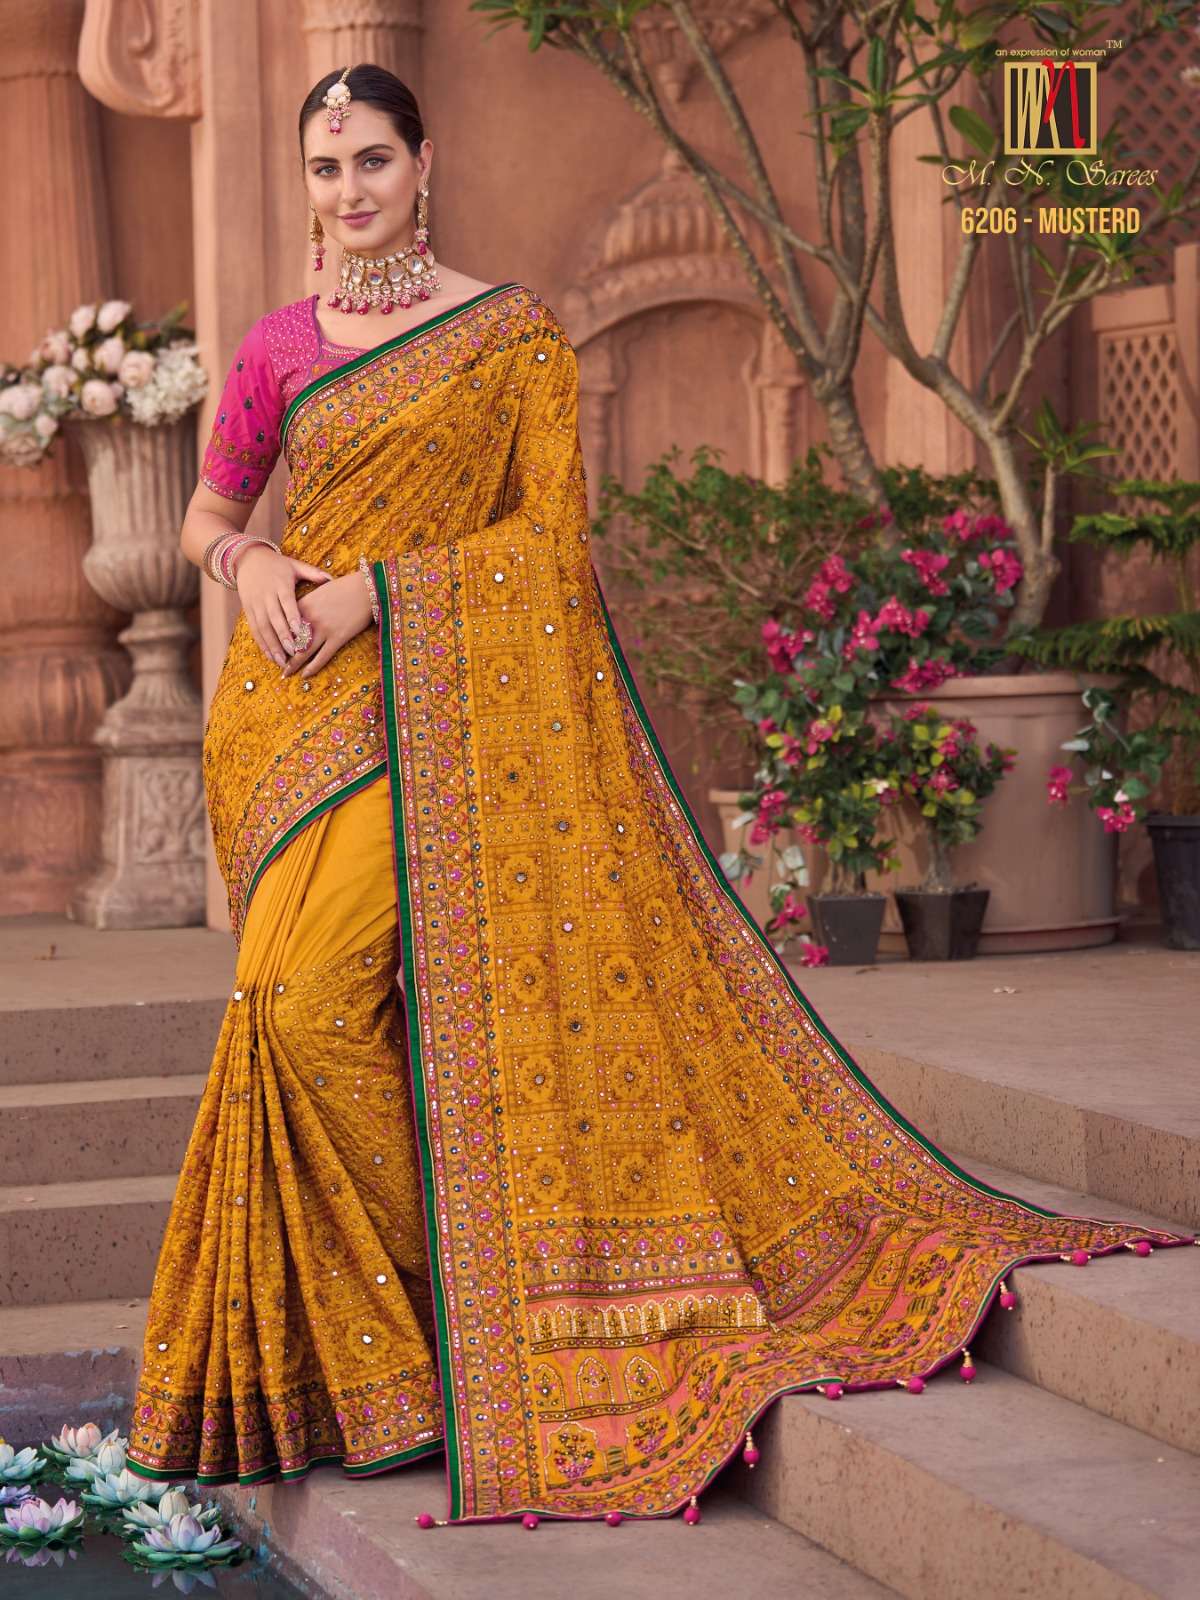 mn saree 6206 colors banarasi silk saree collection with kachhi work 